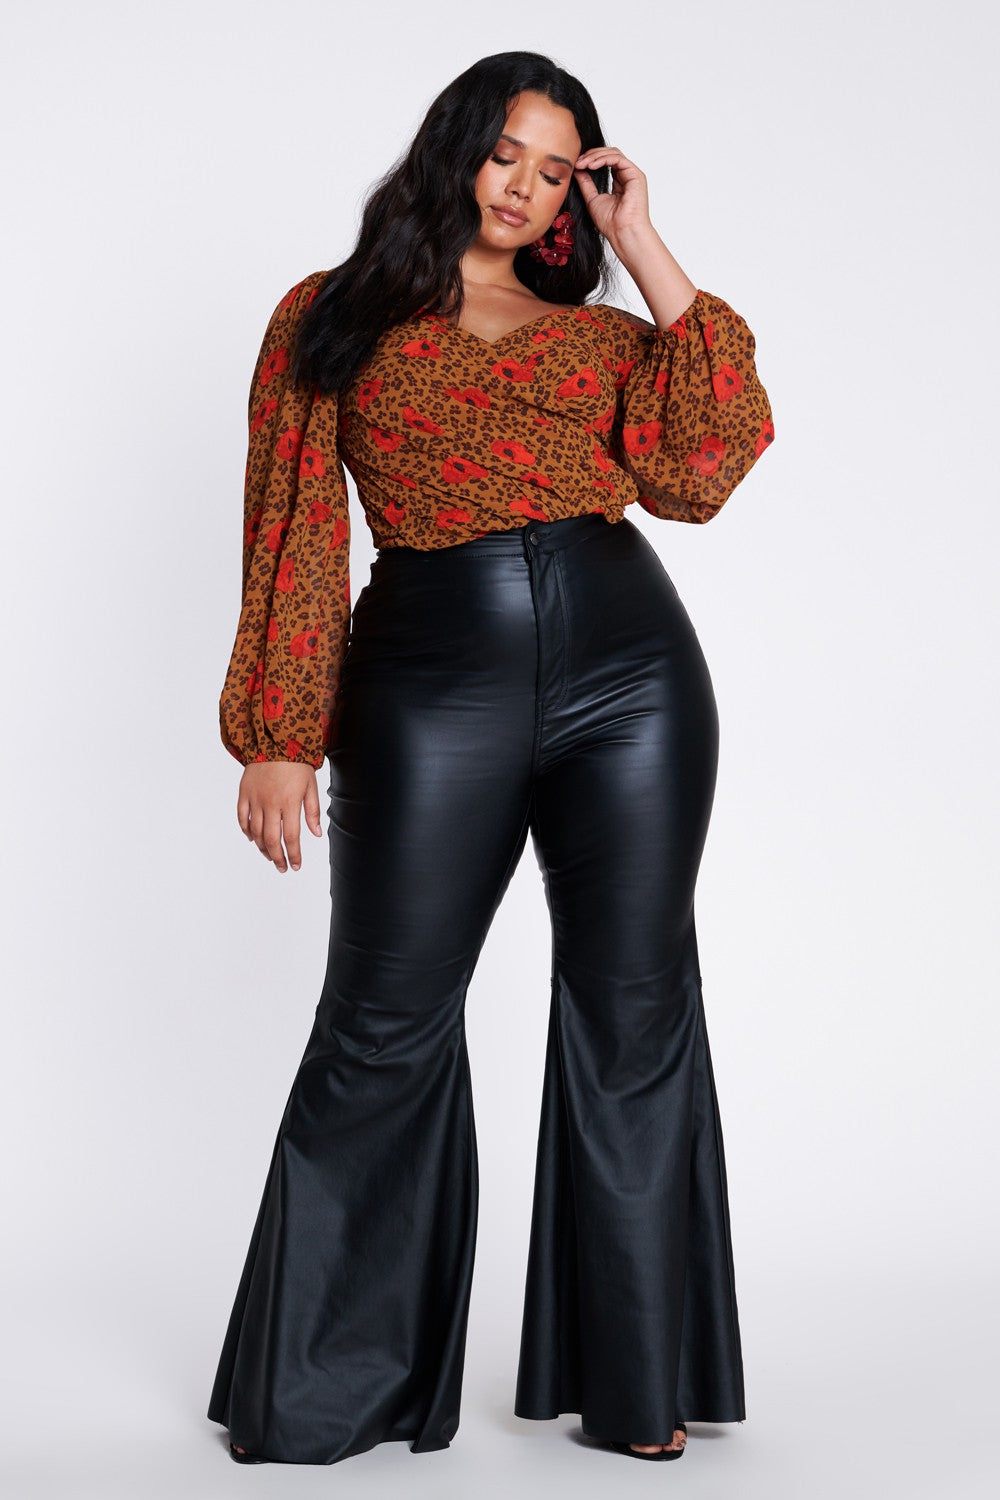 Plus Size Black Faux Leather High Waist Flare Pants – Bella Valentina LA